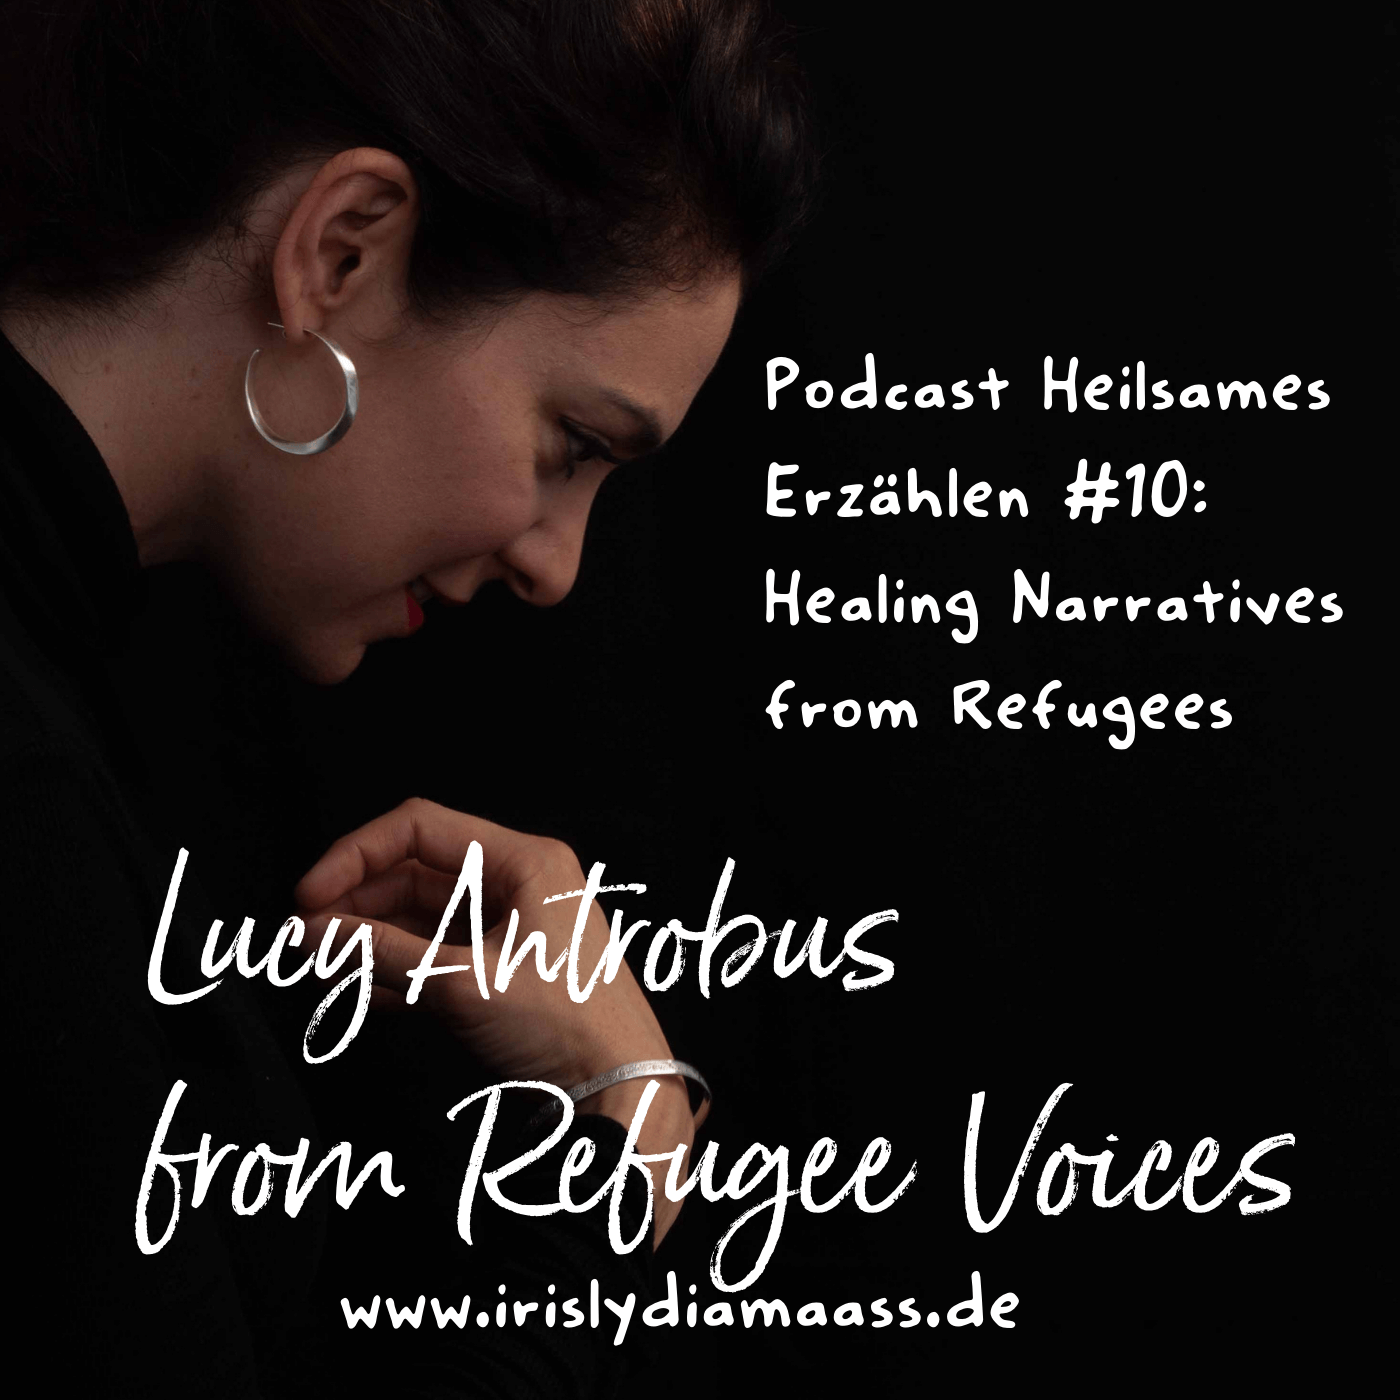 Podcast Heilsames Erzählen #10: Interview mit Lucy Antrobus